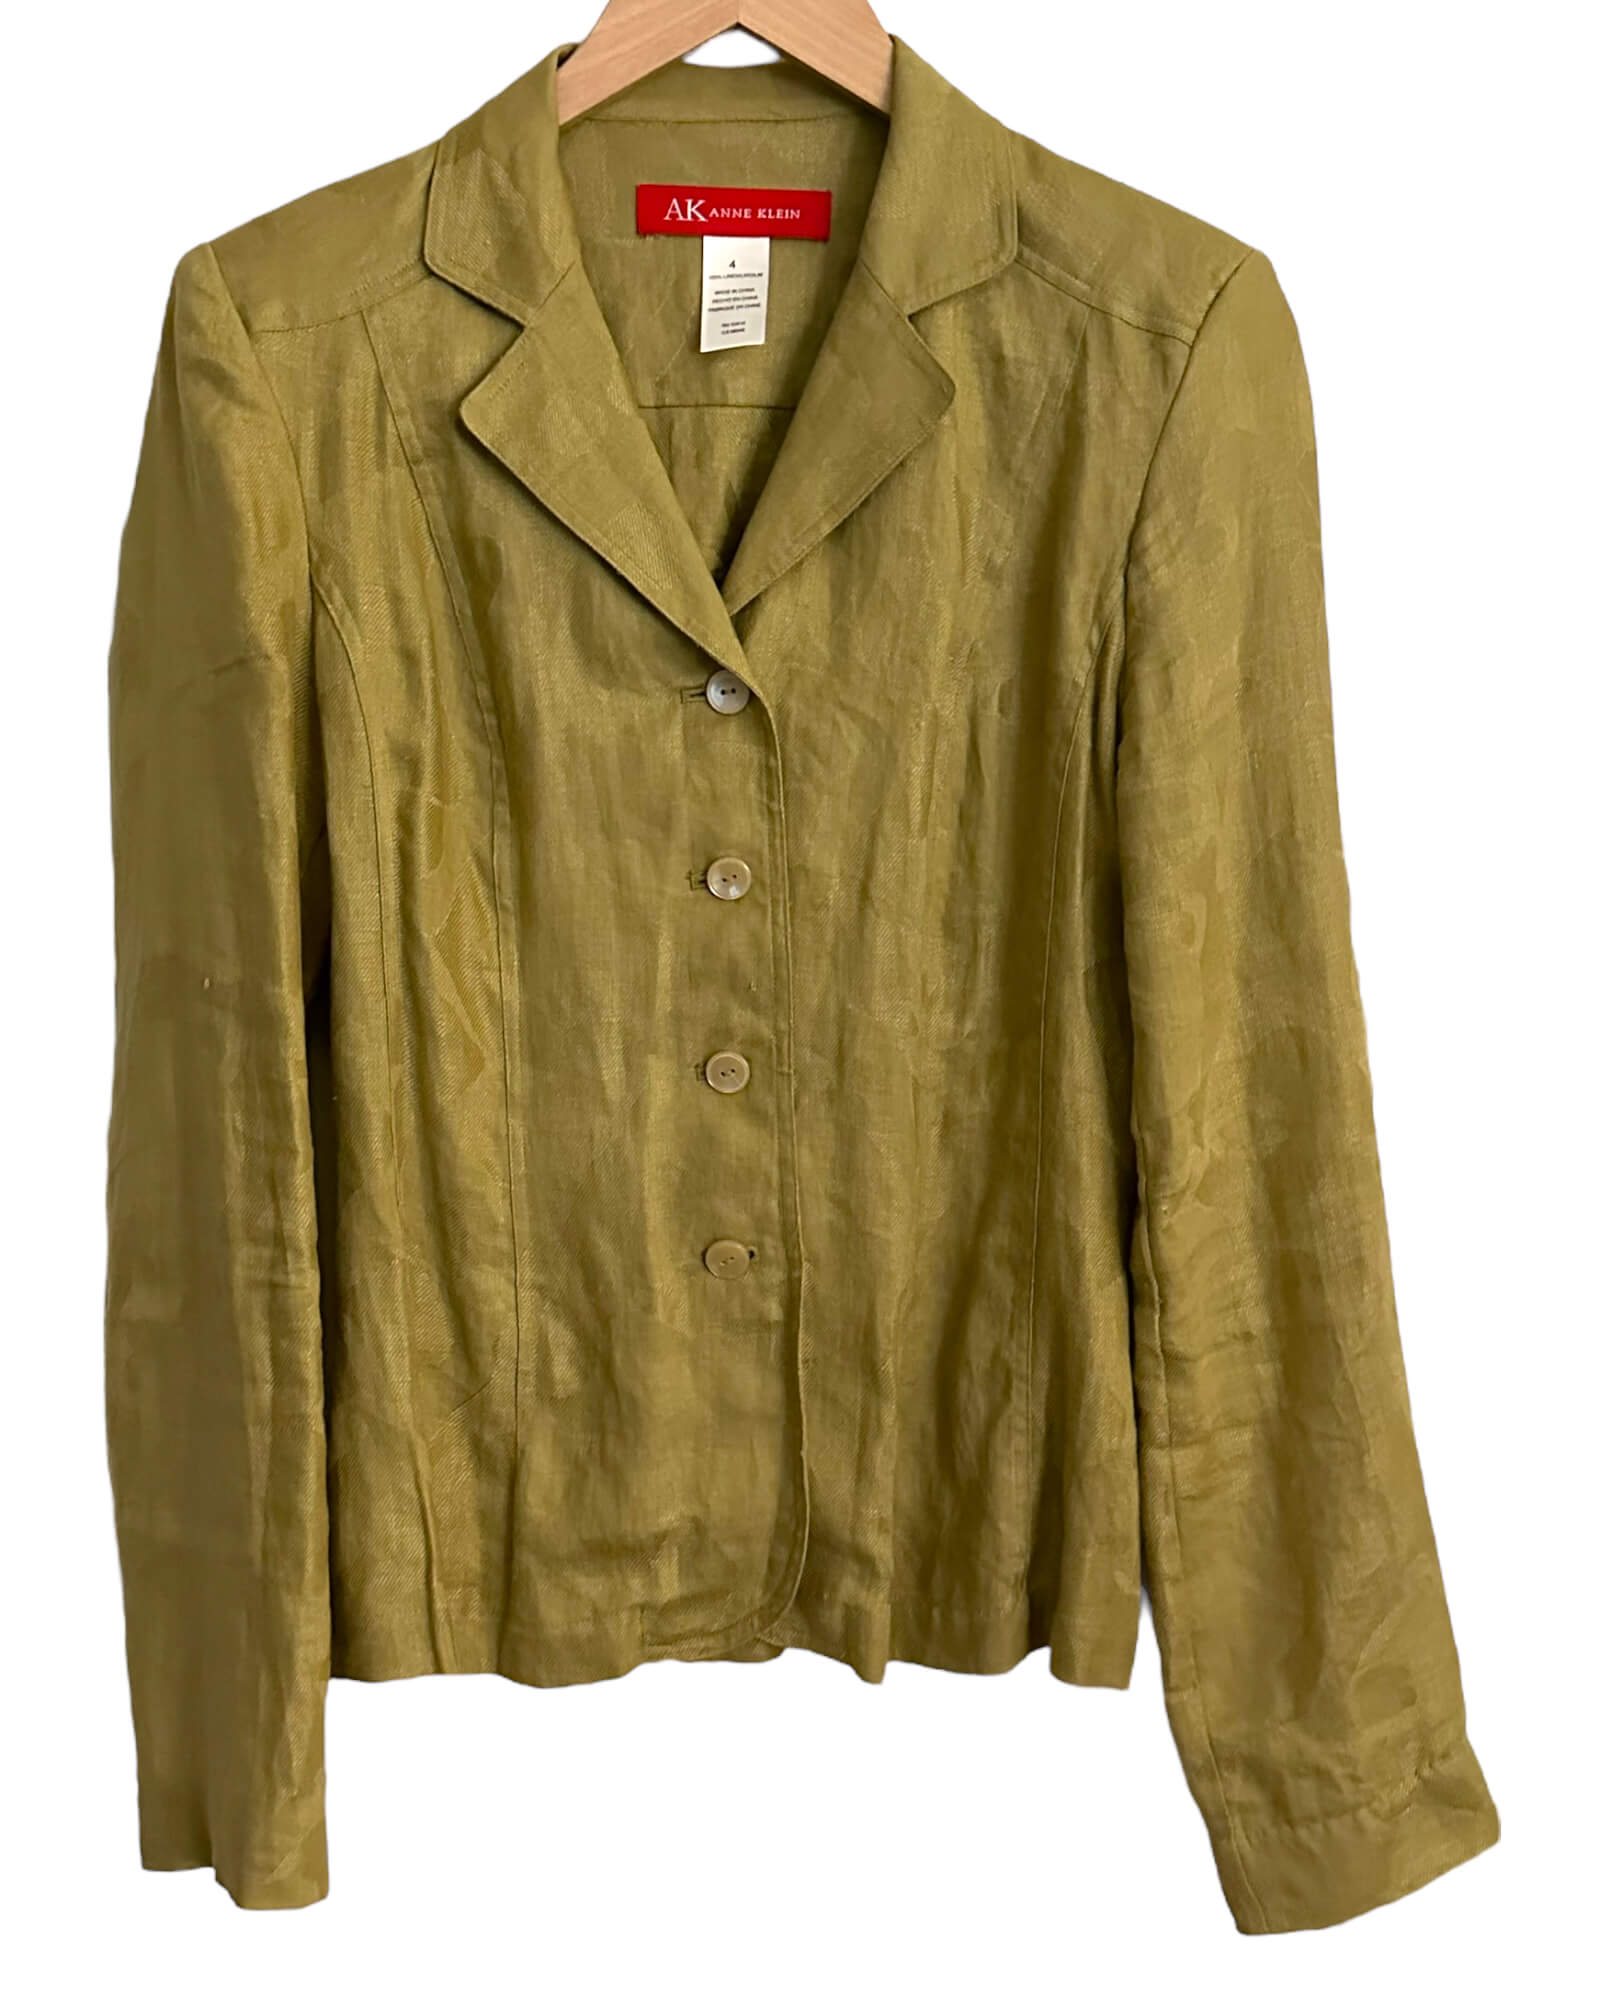 Warm Autumn sandalwood green ANNE KLEIN  brocade jacket